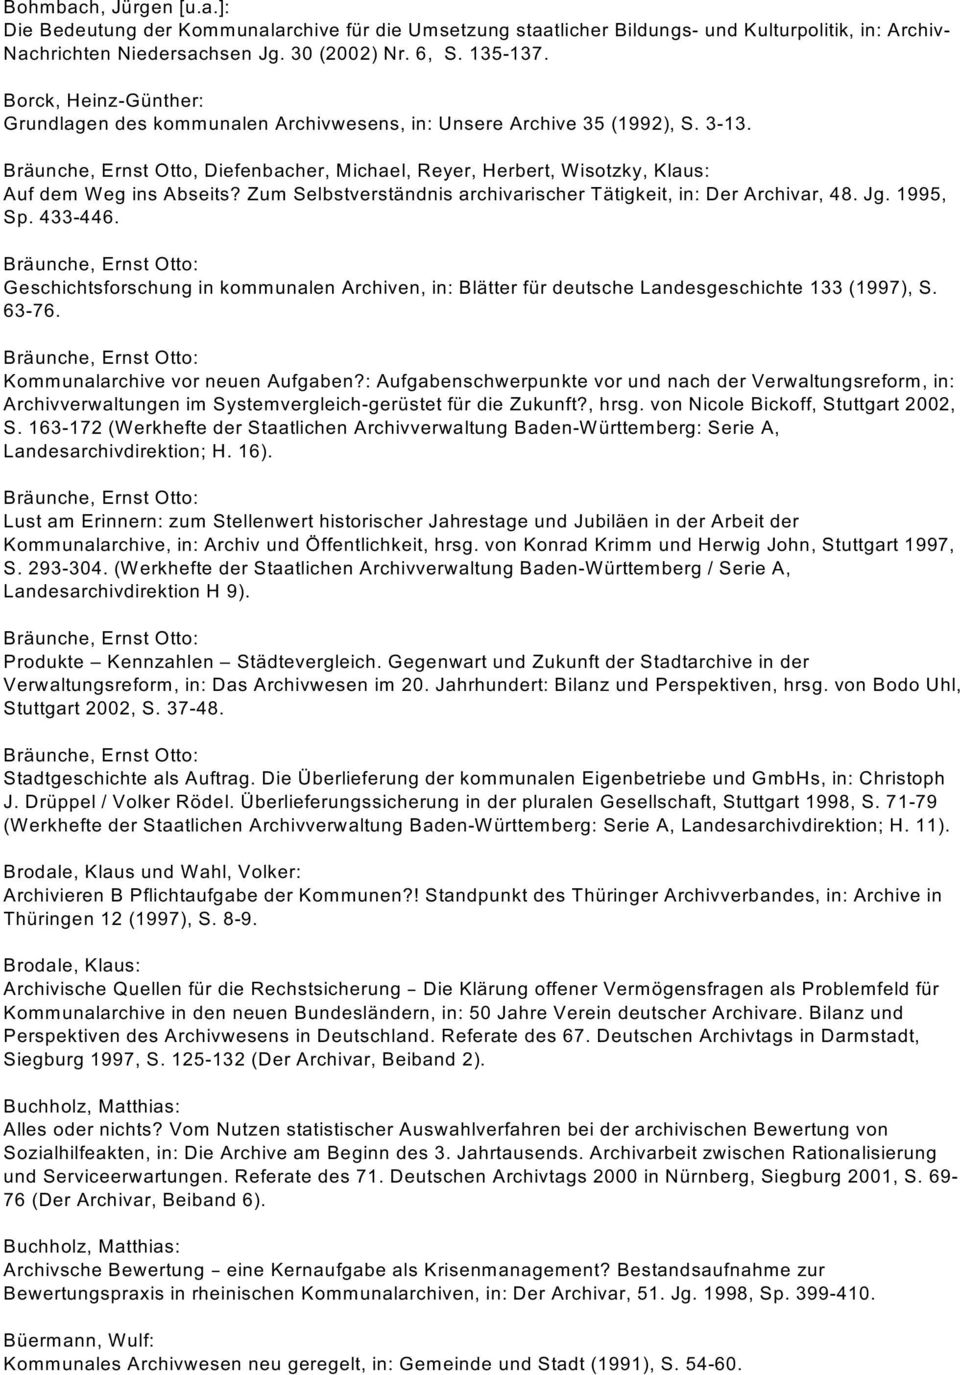 Bräunche, Ernst Otto, Diefenbacher, Michael, Reyer, Herbert, Wisotzky, Klaus: Auf dem Weg ins Abseits? Zum Selbstverständnis archivarischer Tätigkeit, in: Der Archivar, 48. Jg. 1995, Sp. 433-446.